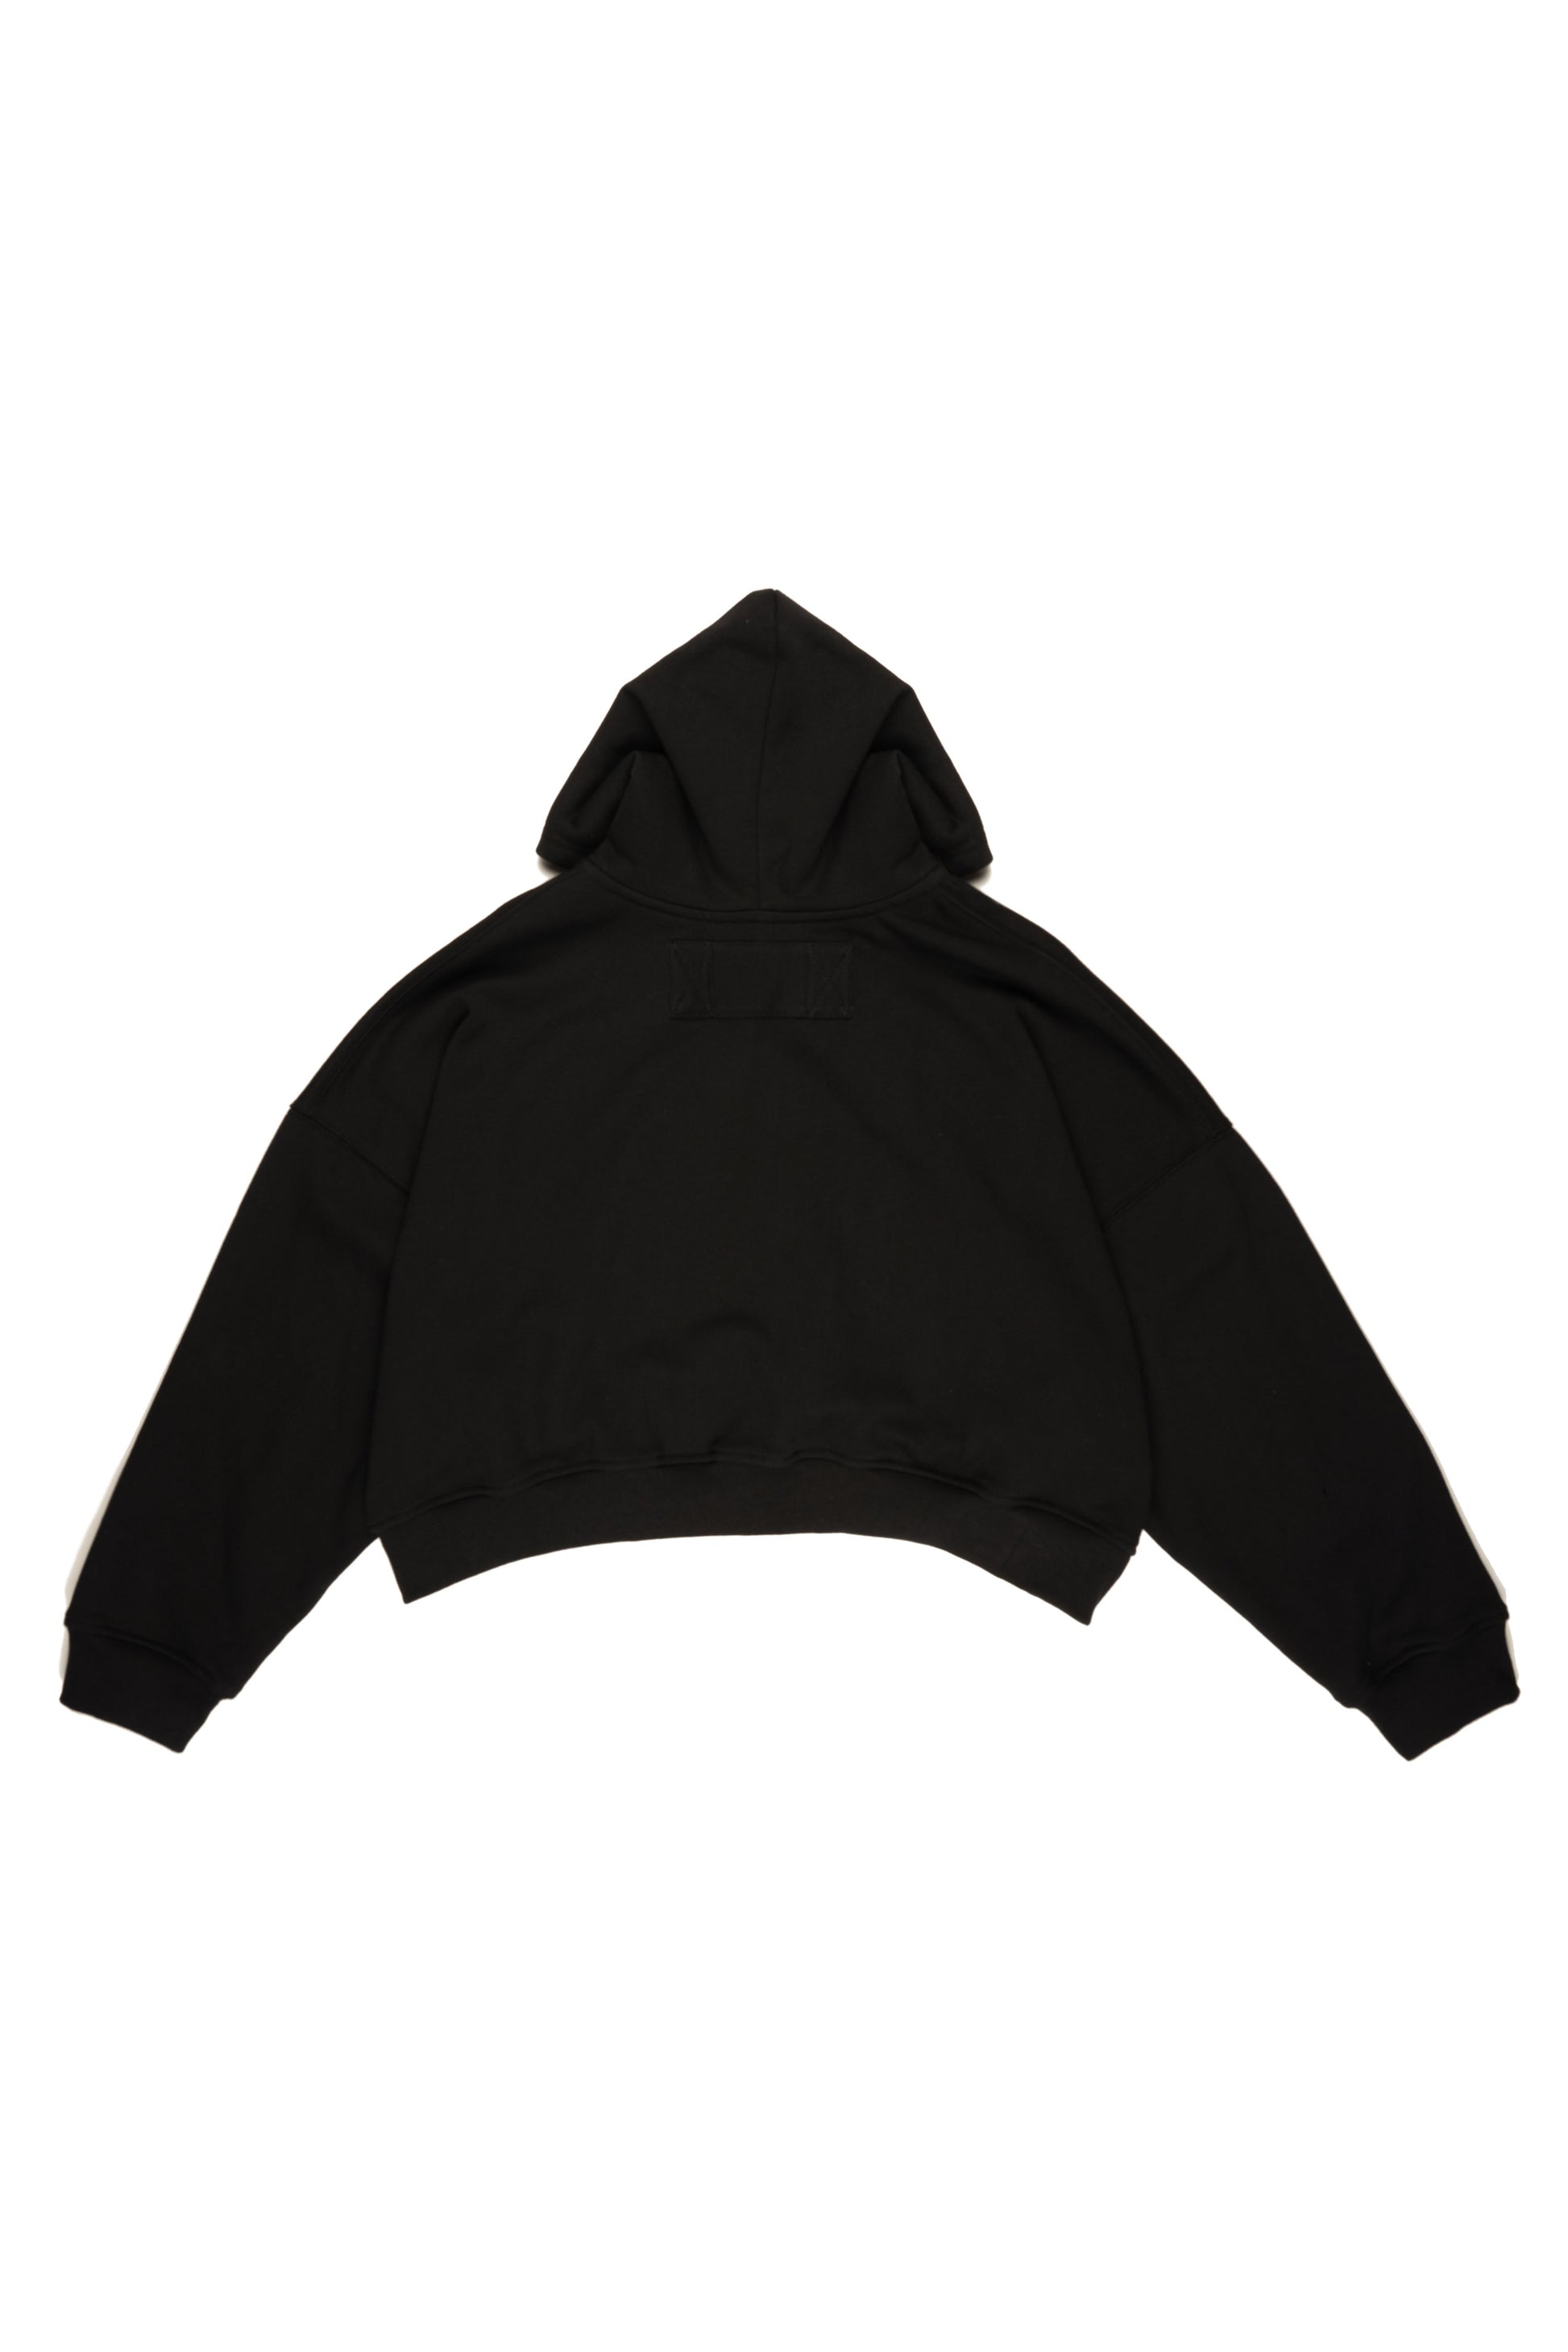 Black WOMAN Slim Fit Hooded Crop Sweatshirt 1949324